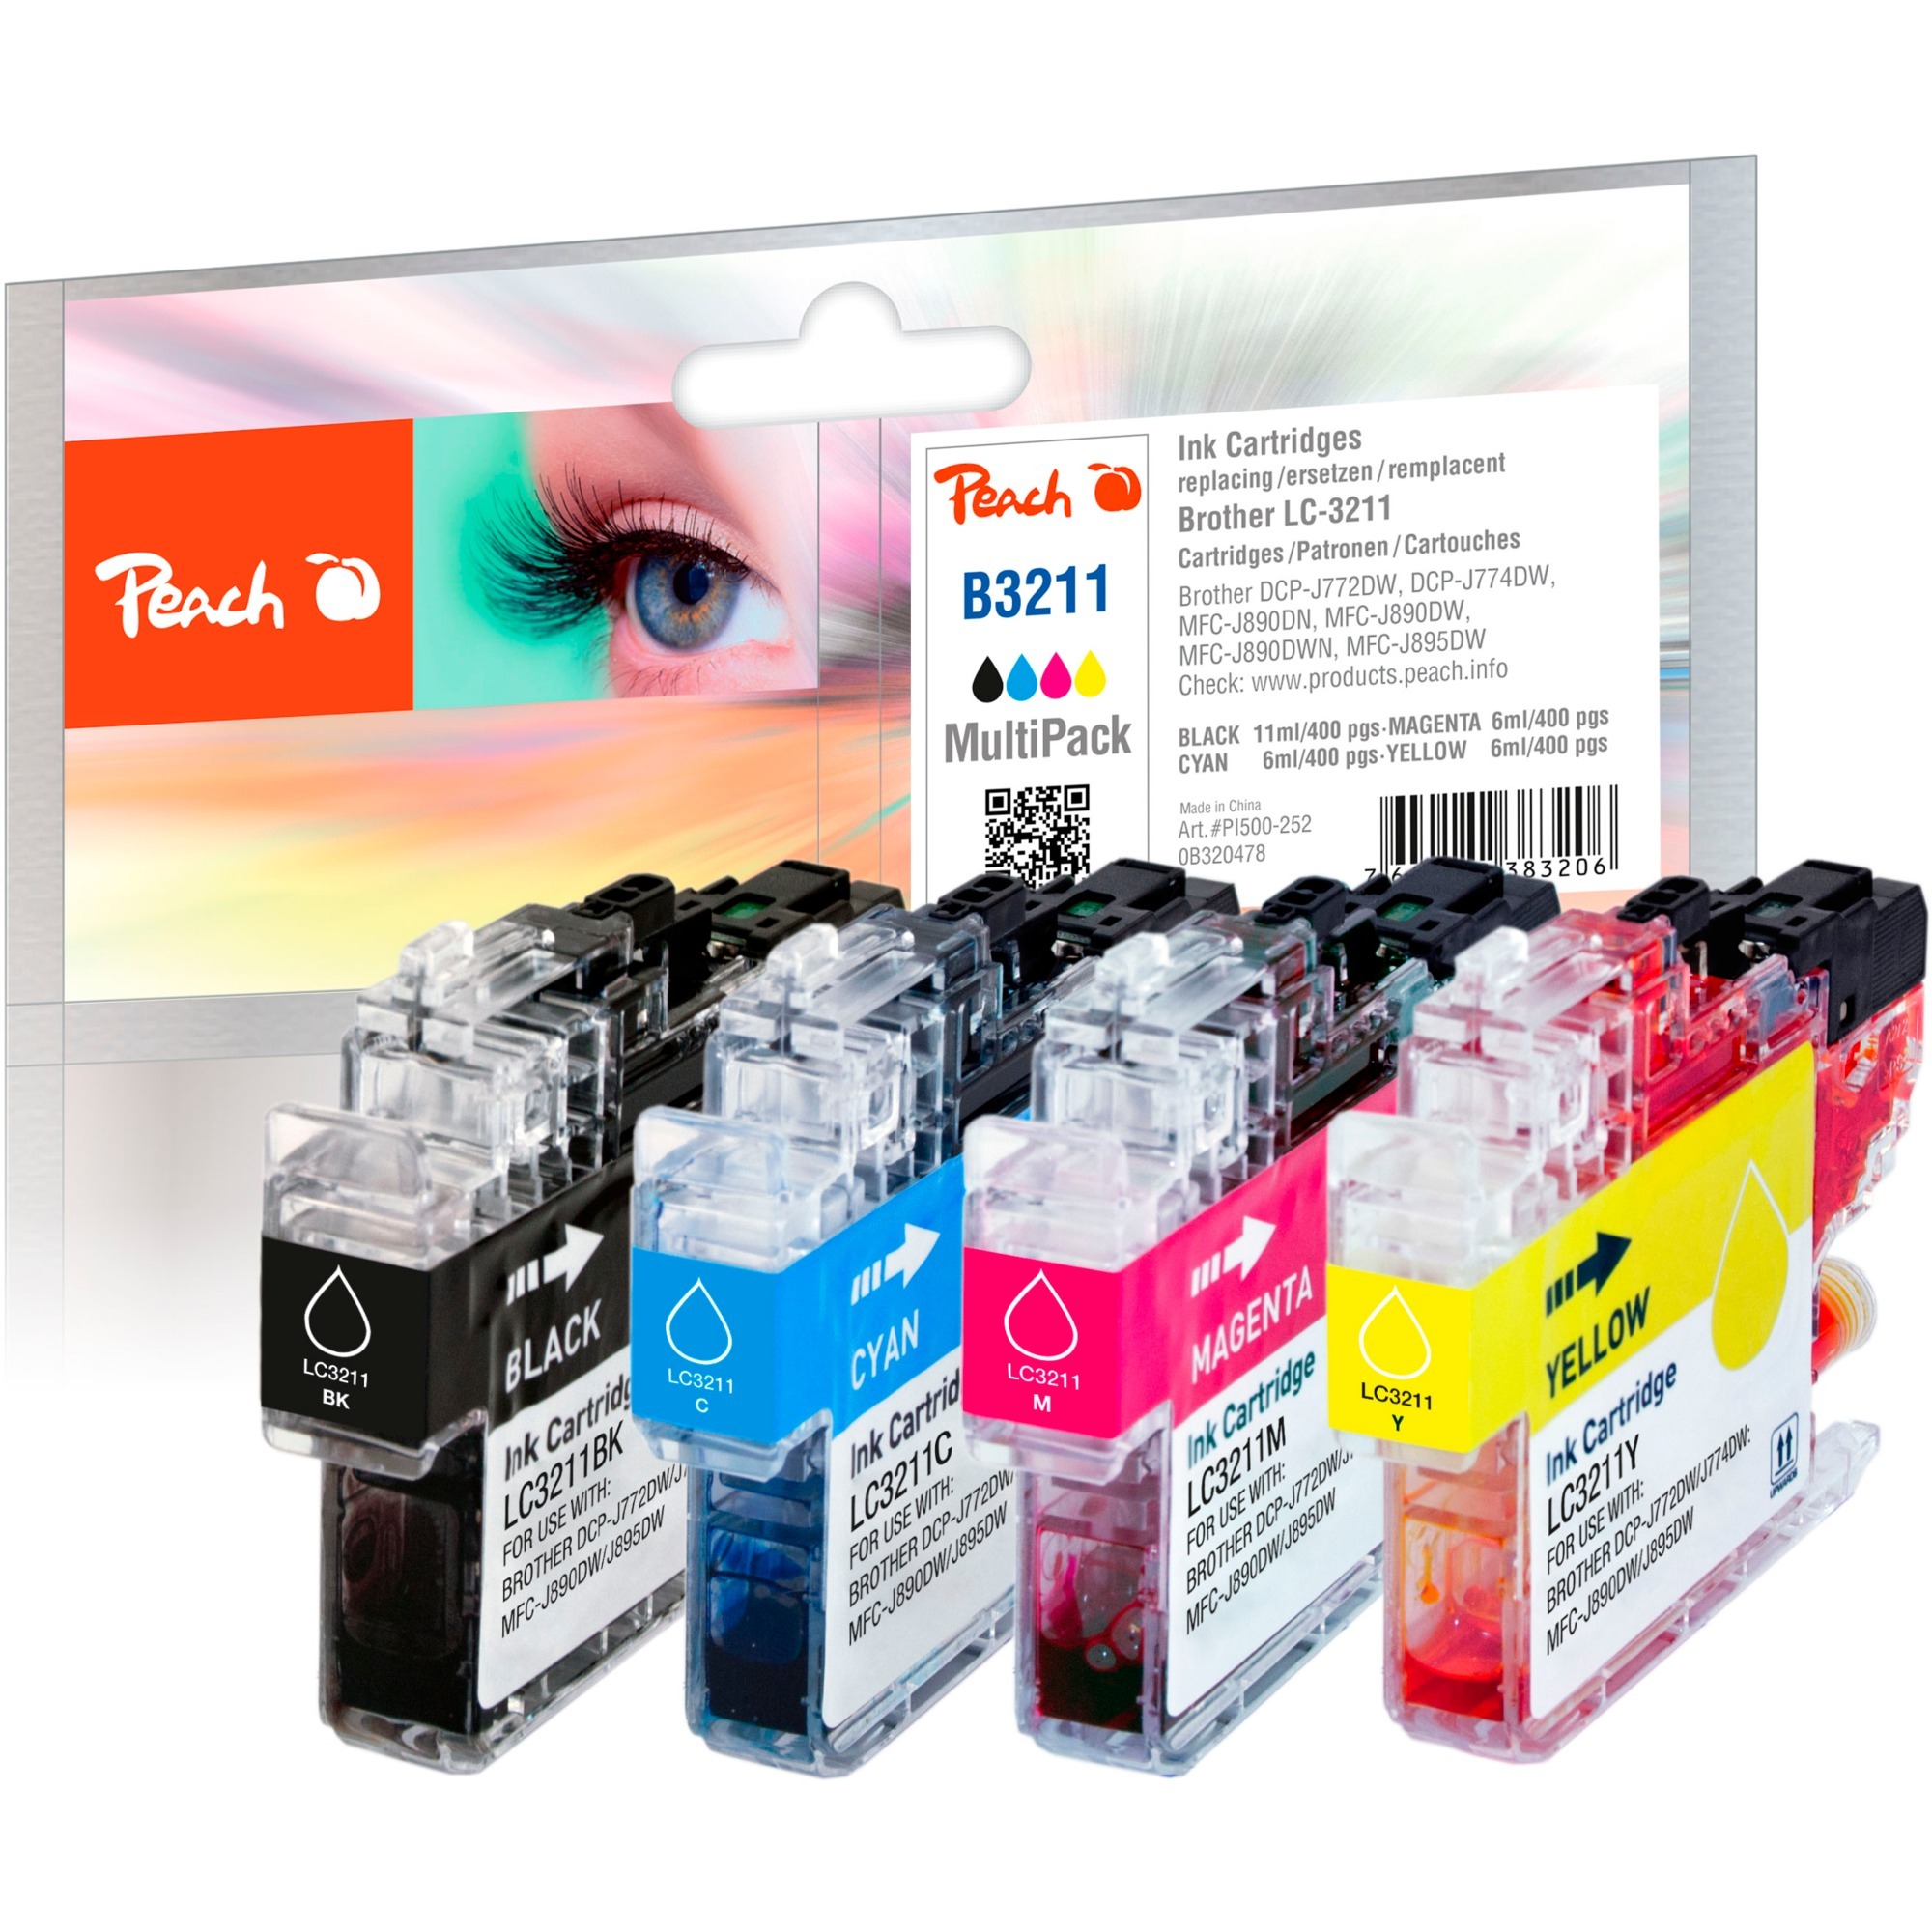 Image of Alternate - Tinte Spar Pack PI500-252 online einkaufen bei Alternate